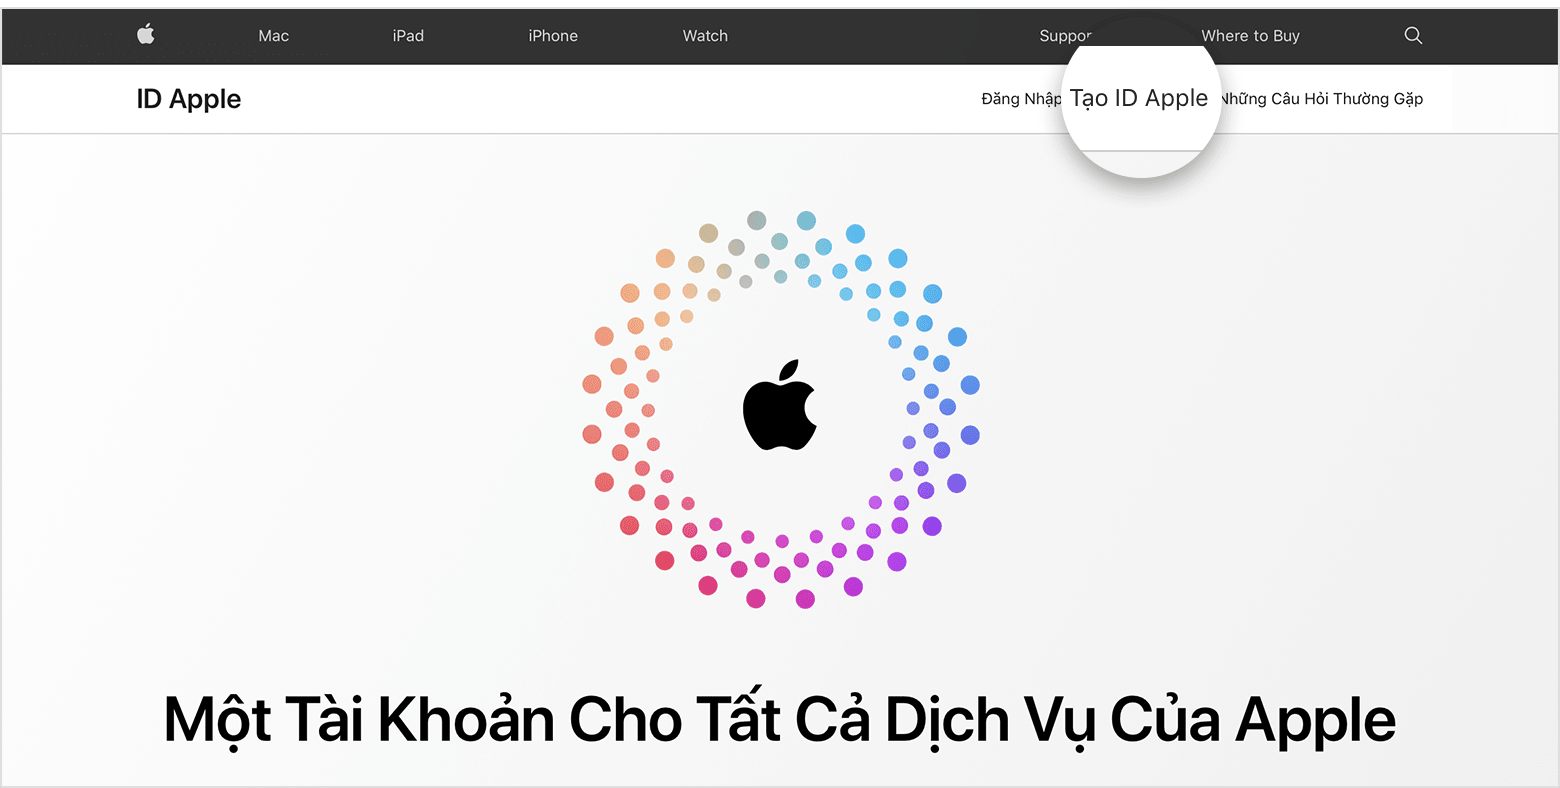 Màn hình trang web hiển thị links nhằm Tạo ID Apple 